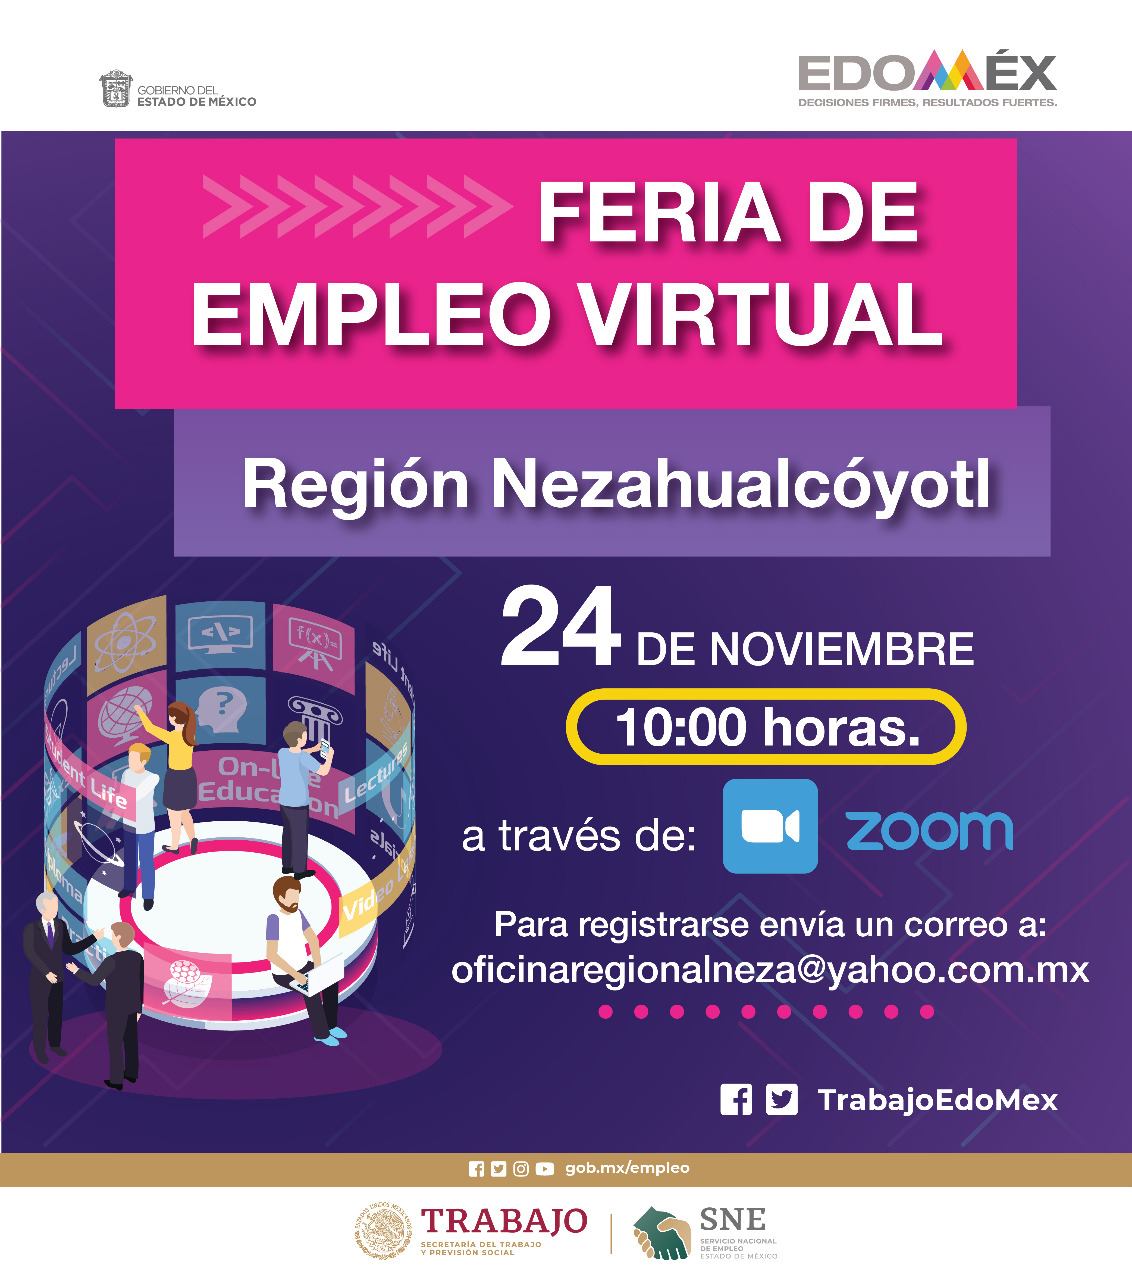 Realizarán Feria de Empleo Virtual Región Nezahualcóyotl e Ixtapaluca ...